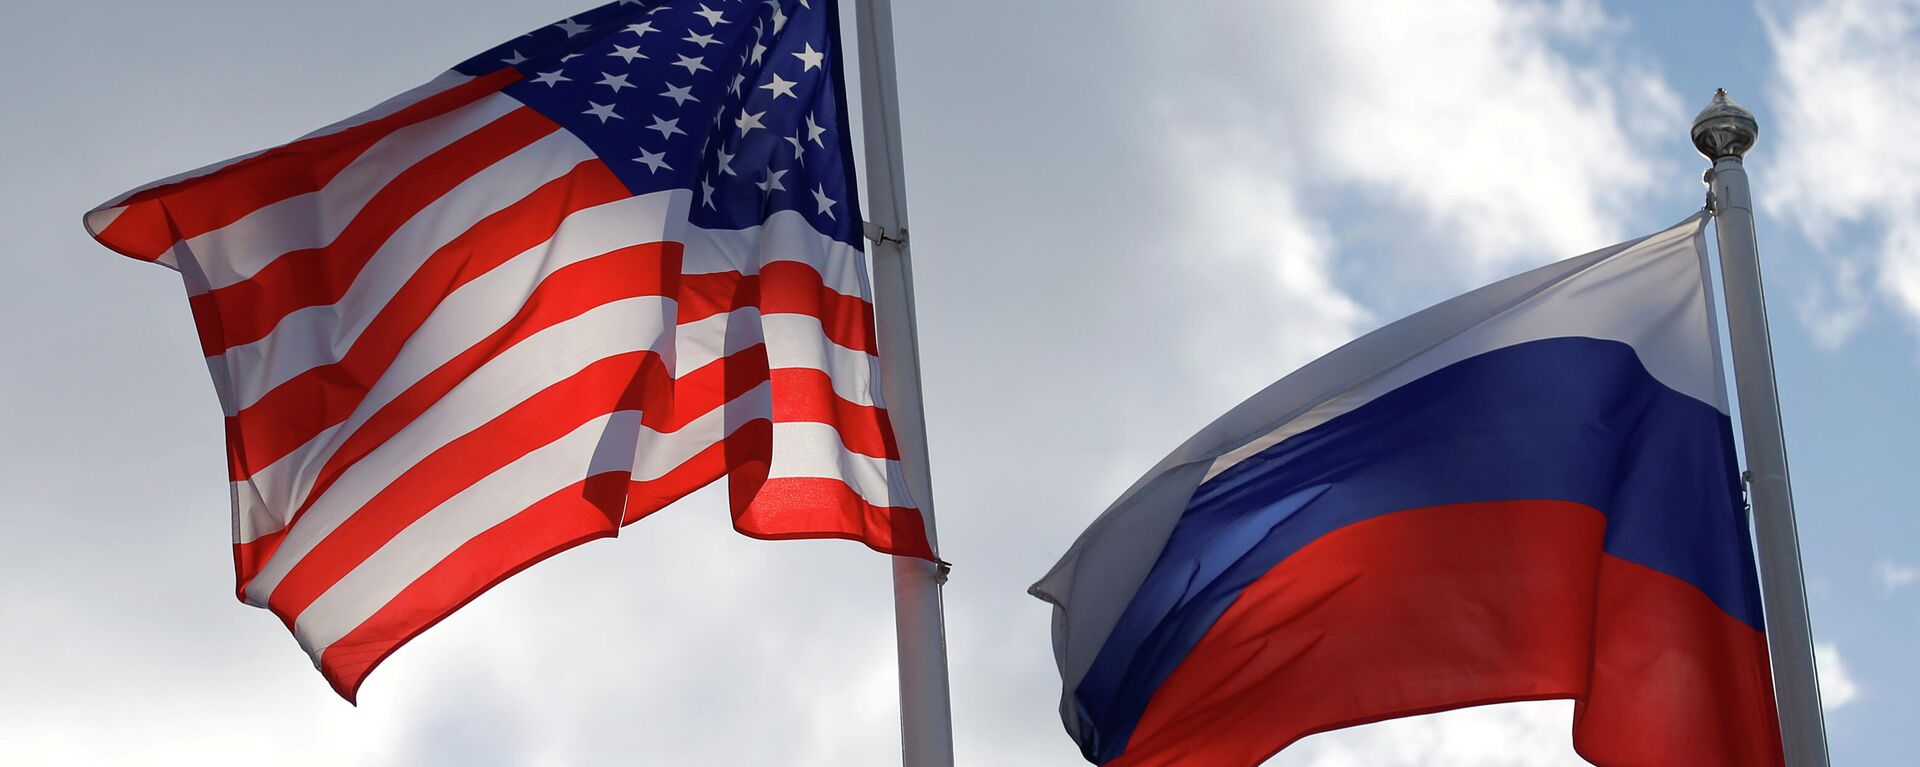 Banderas de EEUU y Rusia - Sputnik Mundo, 1920, 21.04.2021